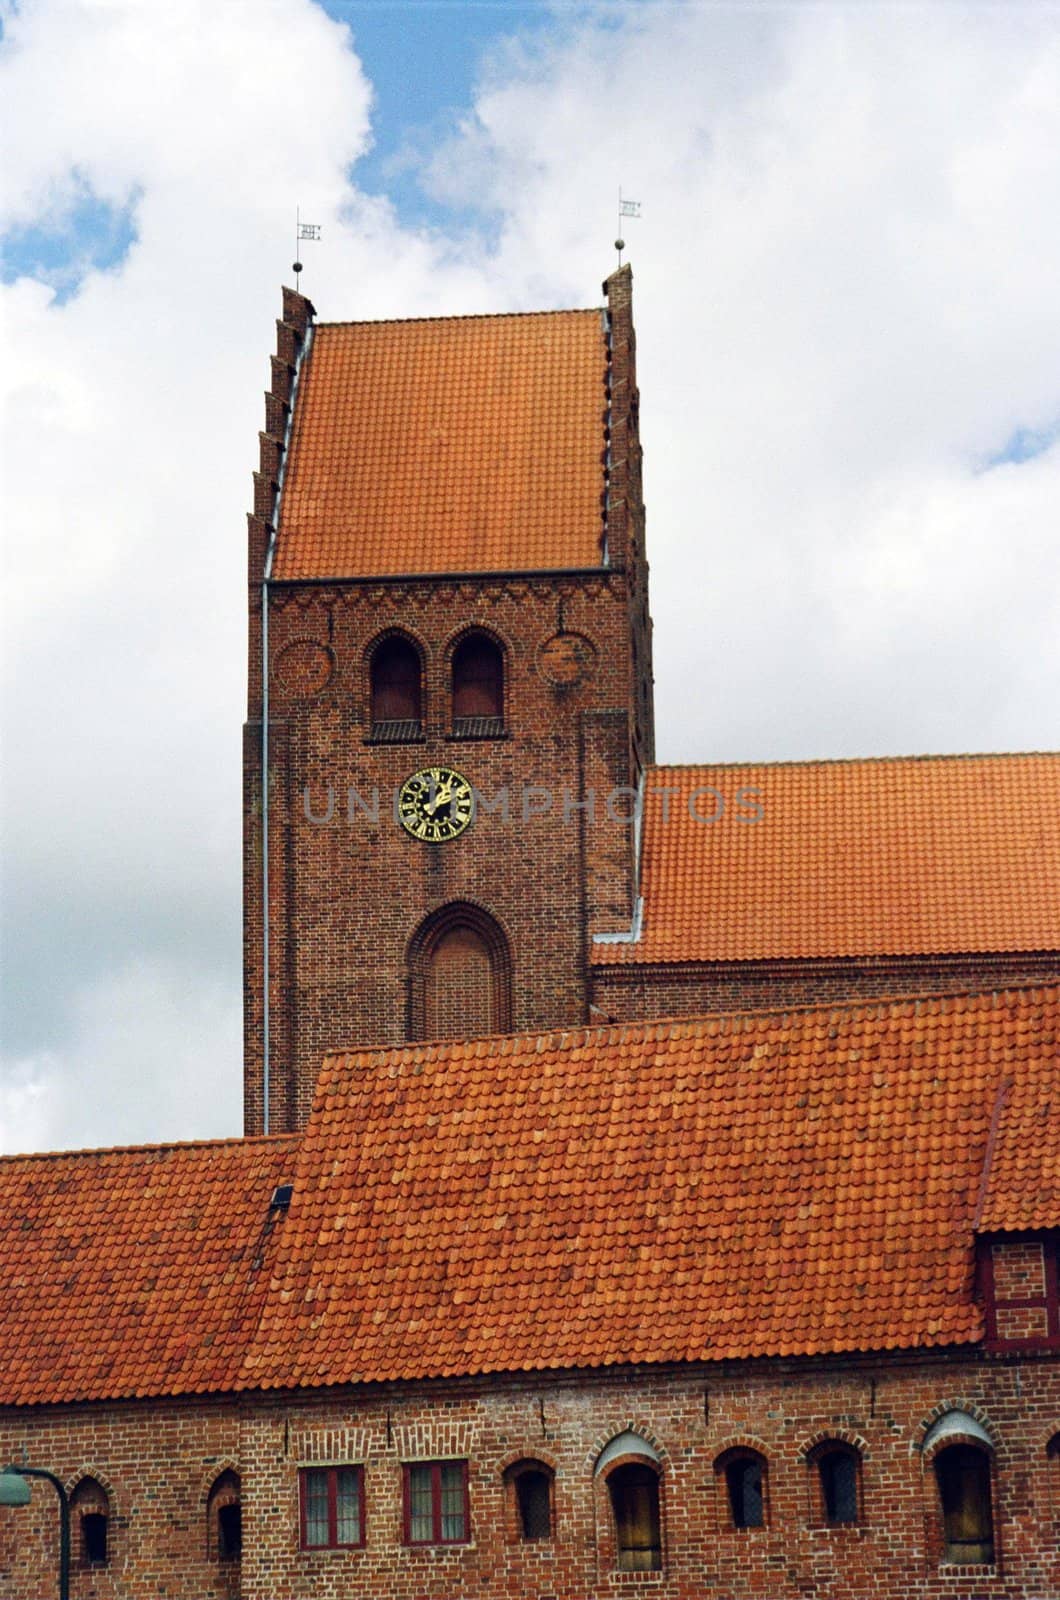 Church in Denmark by Julialine